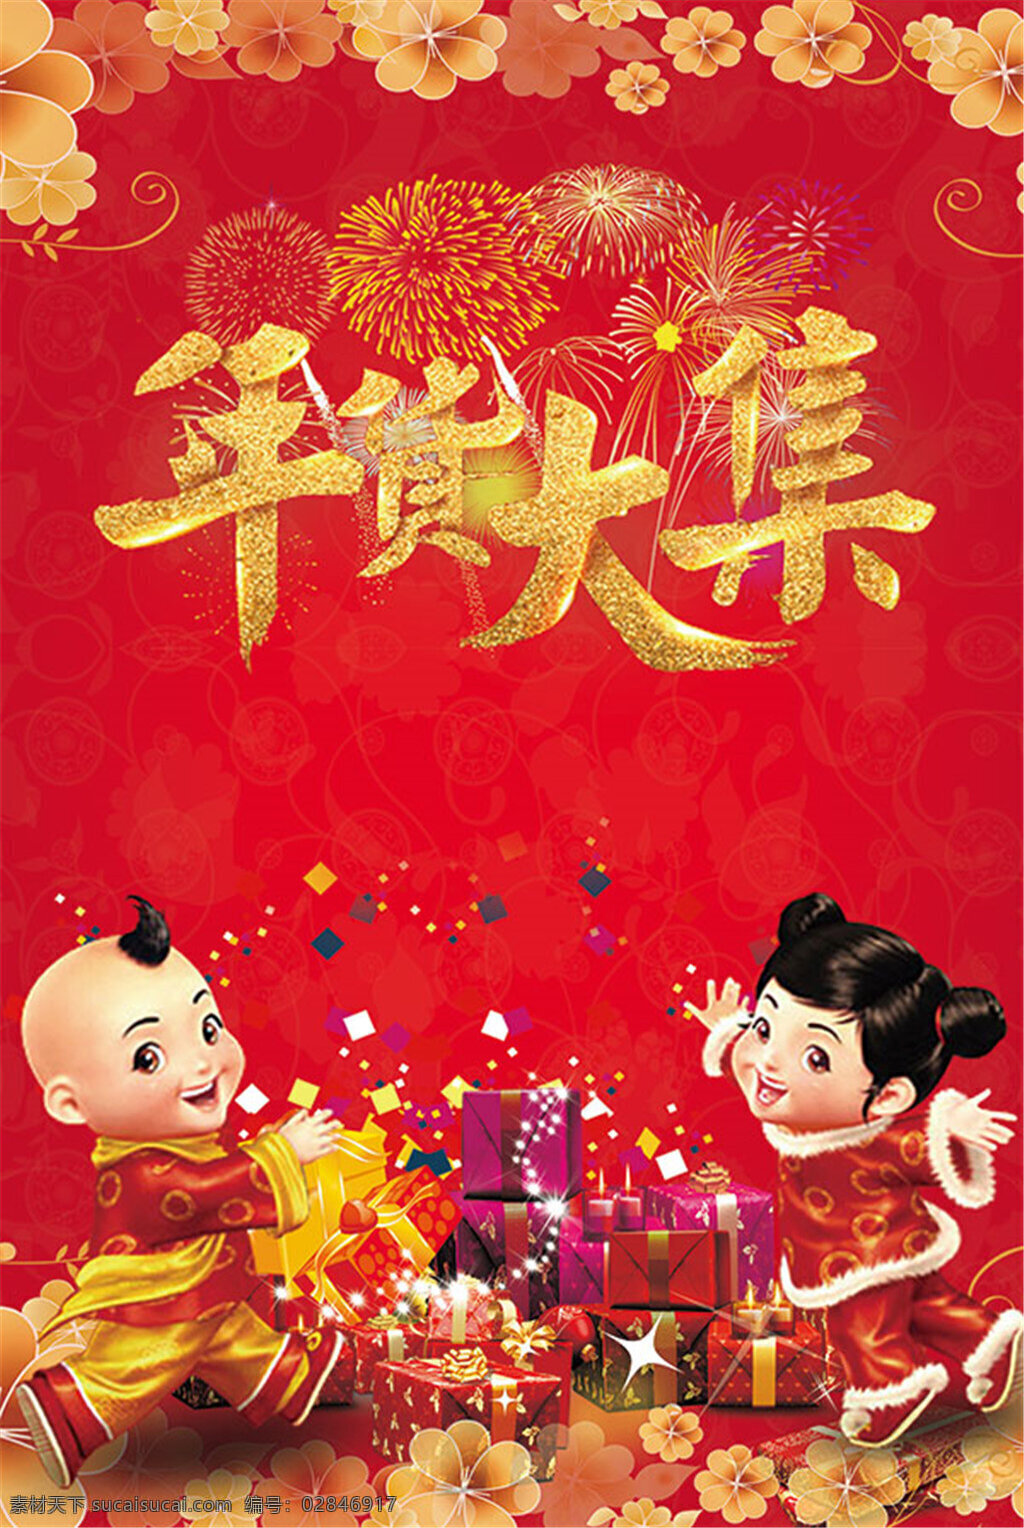 年货大集海报 年货大集展板 年货节海报 年货节宣传 年货节促销 质感娃娃 礼物 烟花 年货素材 中国风素材